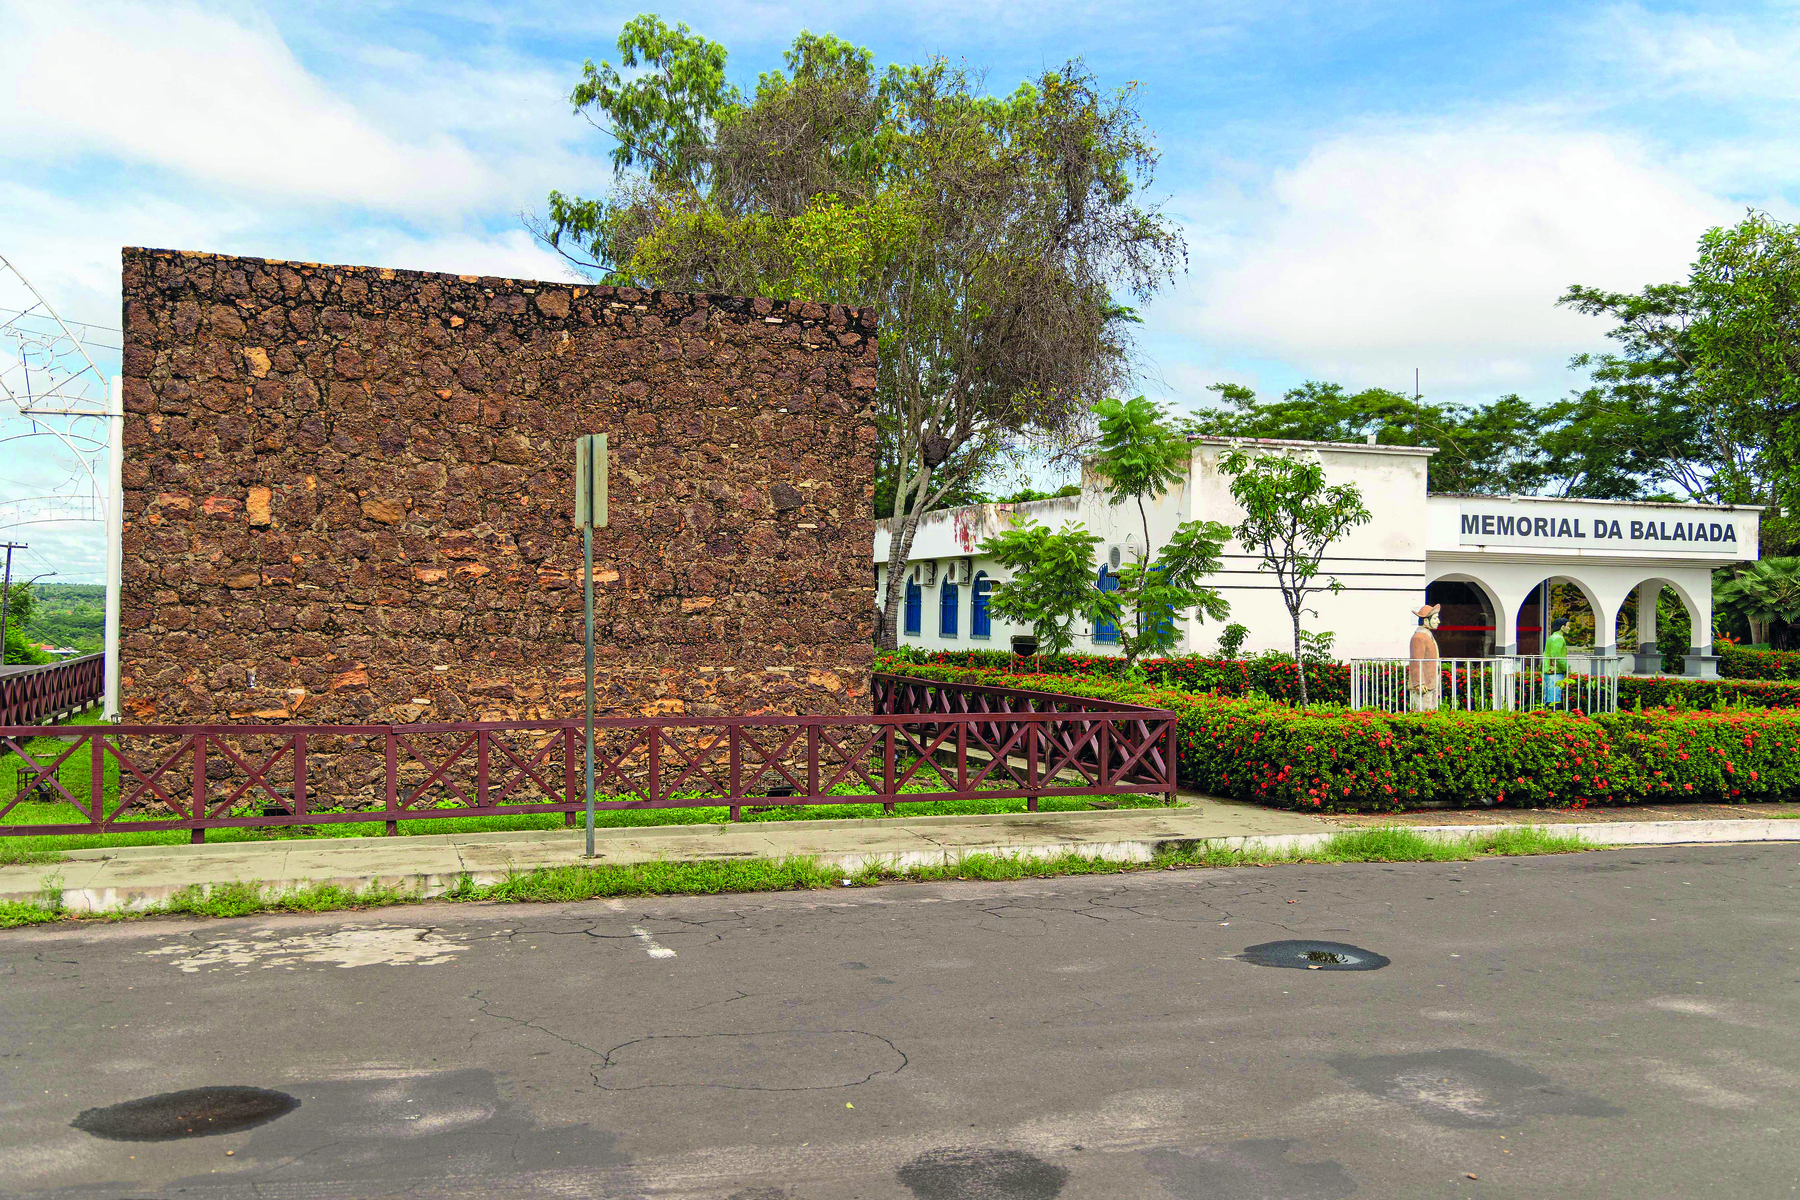 Fotografia. Uma parede de pedra em ruínas, cercada por uma pequena grade, e à direita, uma casa com paredes brancas, entrada composta por três arcos, contendo o texto sobre sua fachada: 'Memorial da Balaiada'.